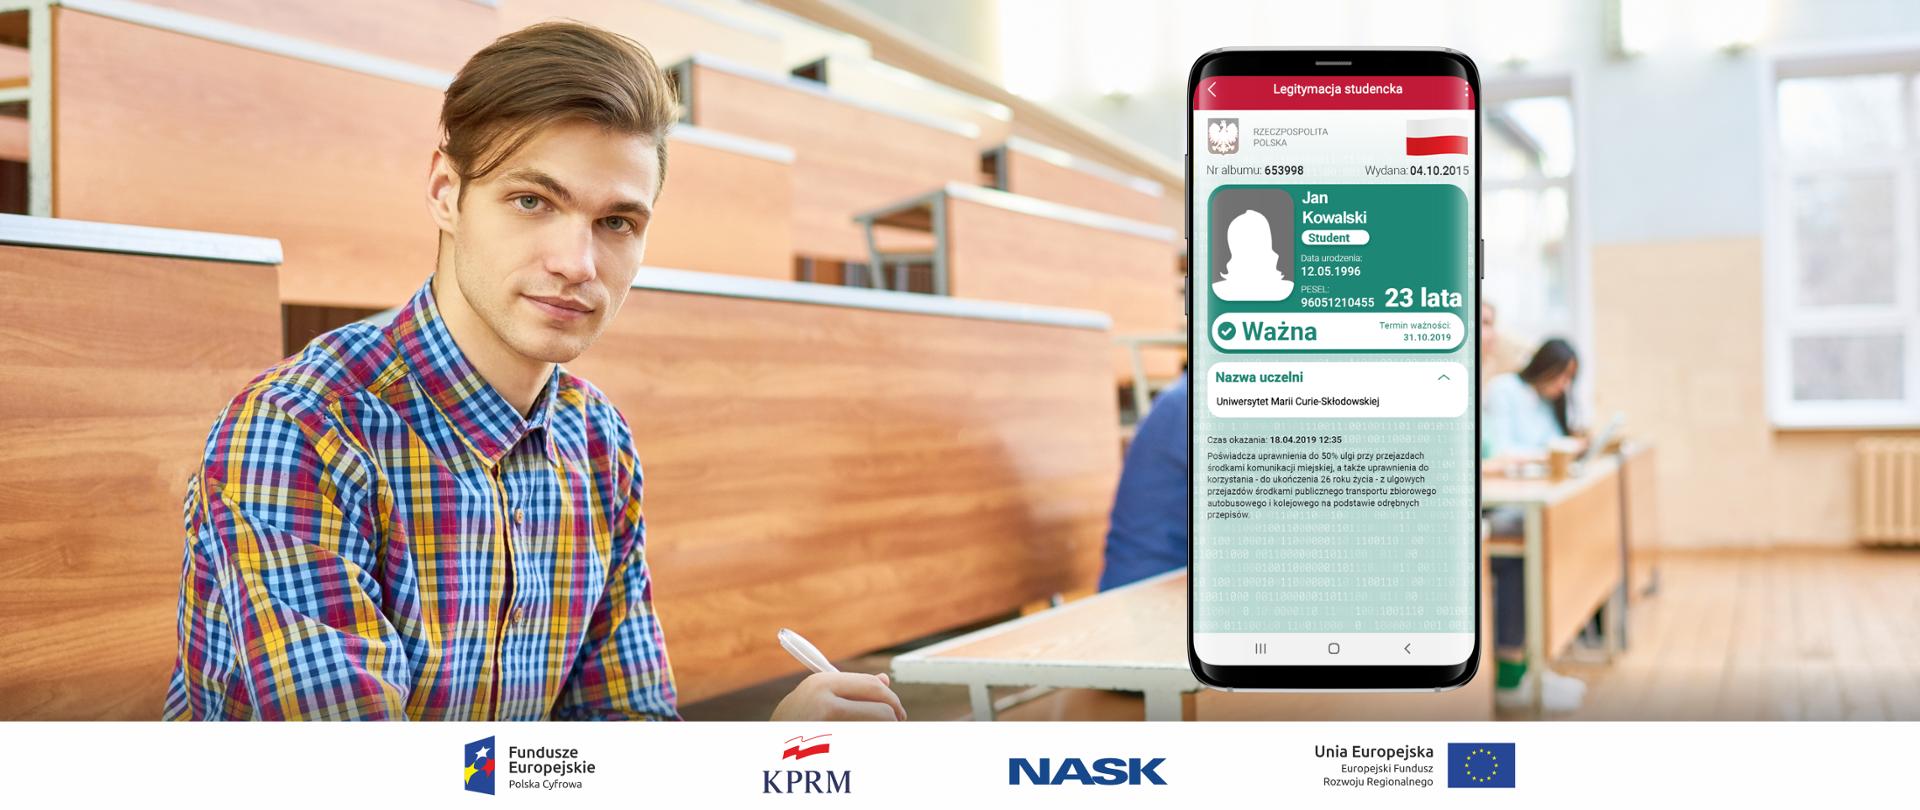 Młody mężczyzna (student) siedzi w sali wykładowej, patrzy w obiektyw. Z prawej strony grafika smartfona, na ekranie którego widać mLegitymację studencką.